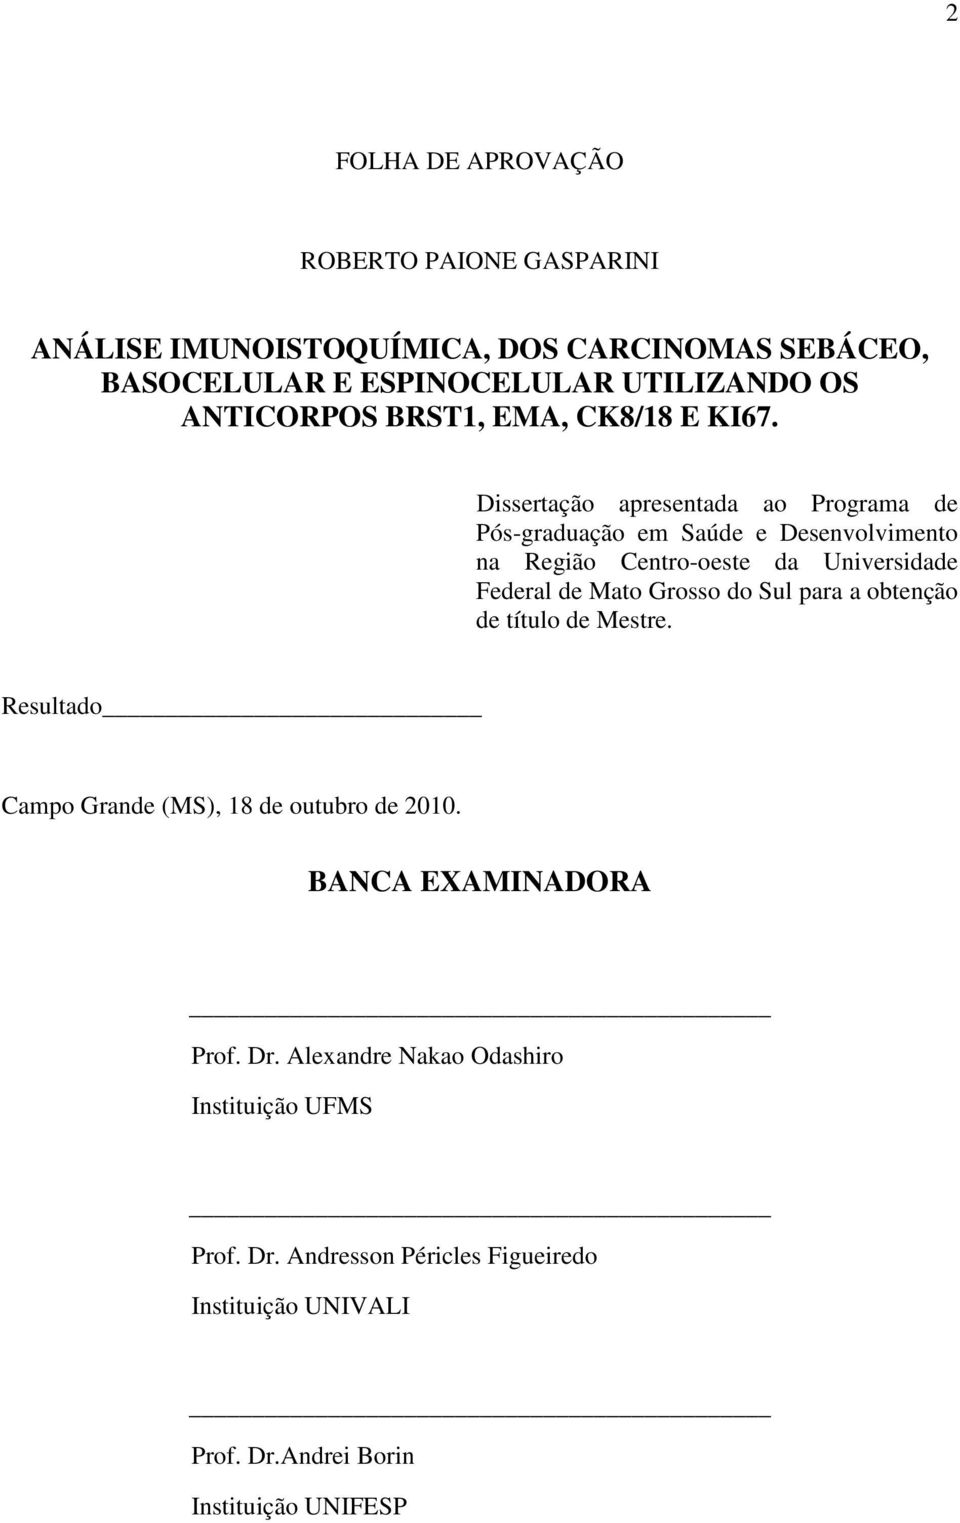 Dissertação apresentada ao Programa de Pós-graduação em Saúde e Desenvolvimento na Região Centro-oeste da Universidade Federal de Mato Grosso do